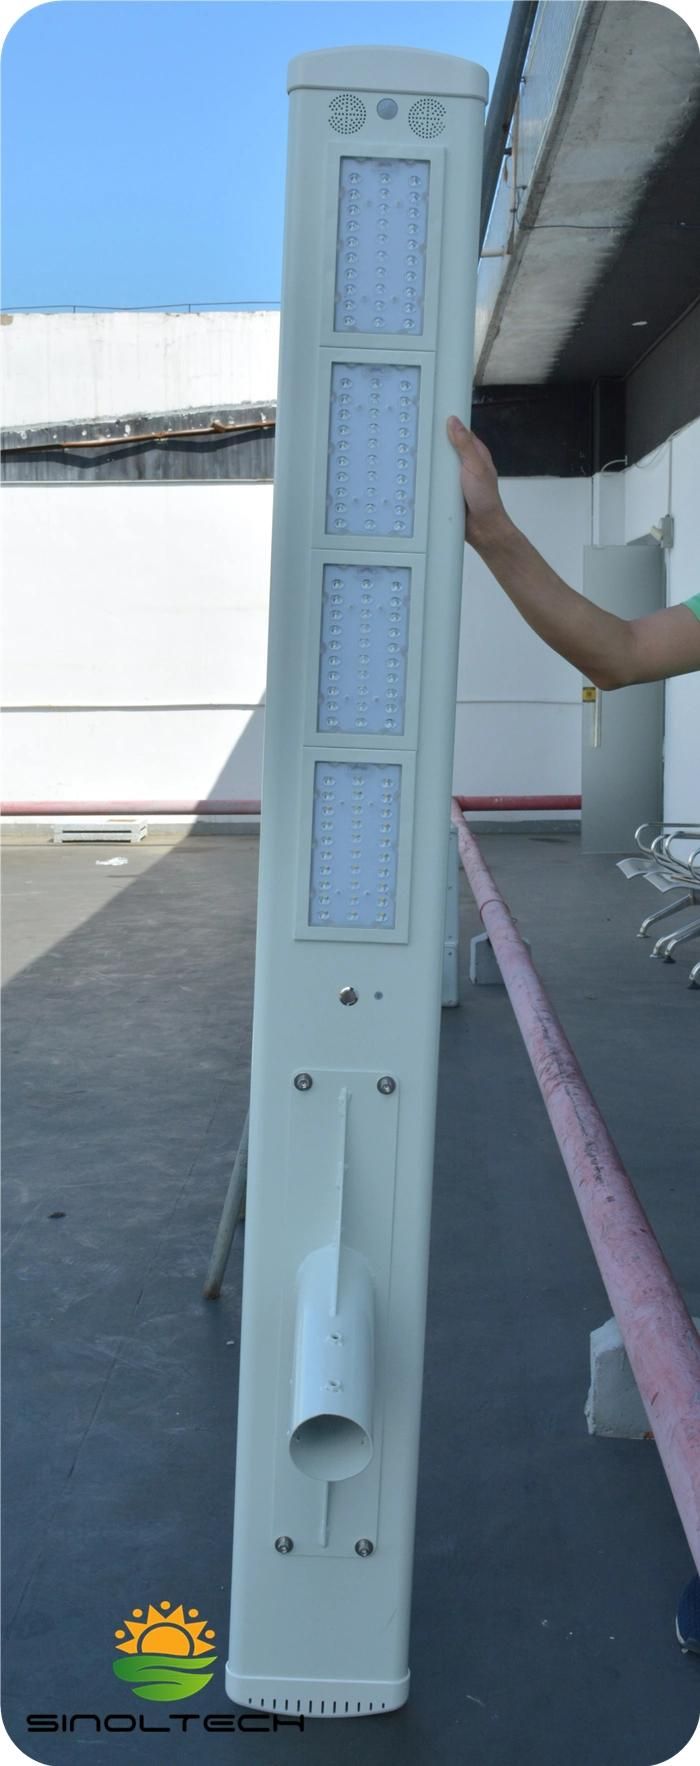 80W Elite Series  LED Integrated  Solar  Street Light (ELITE-080)